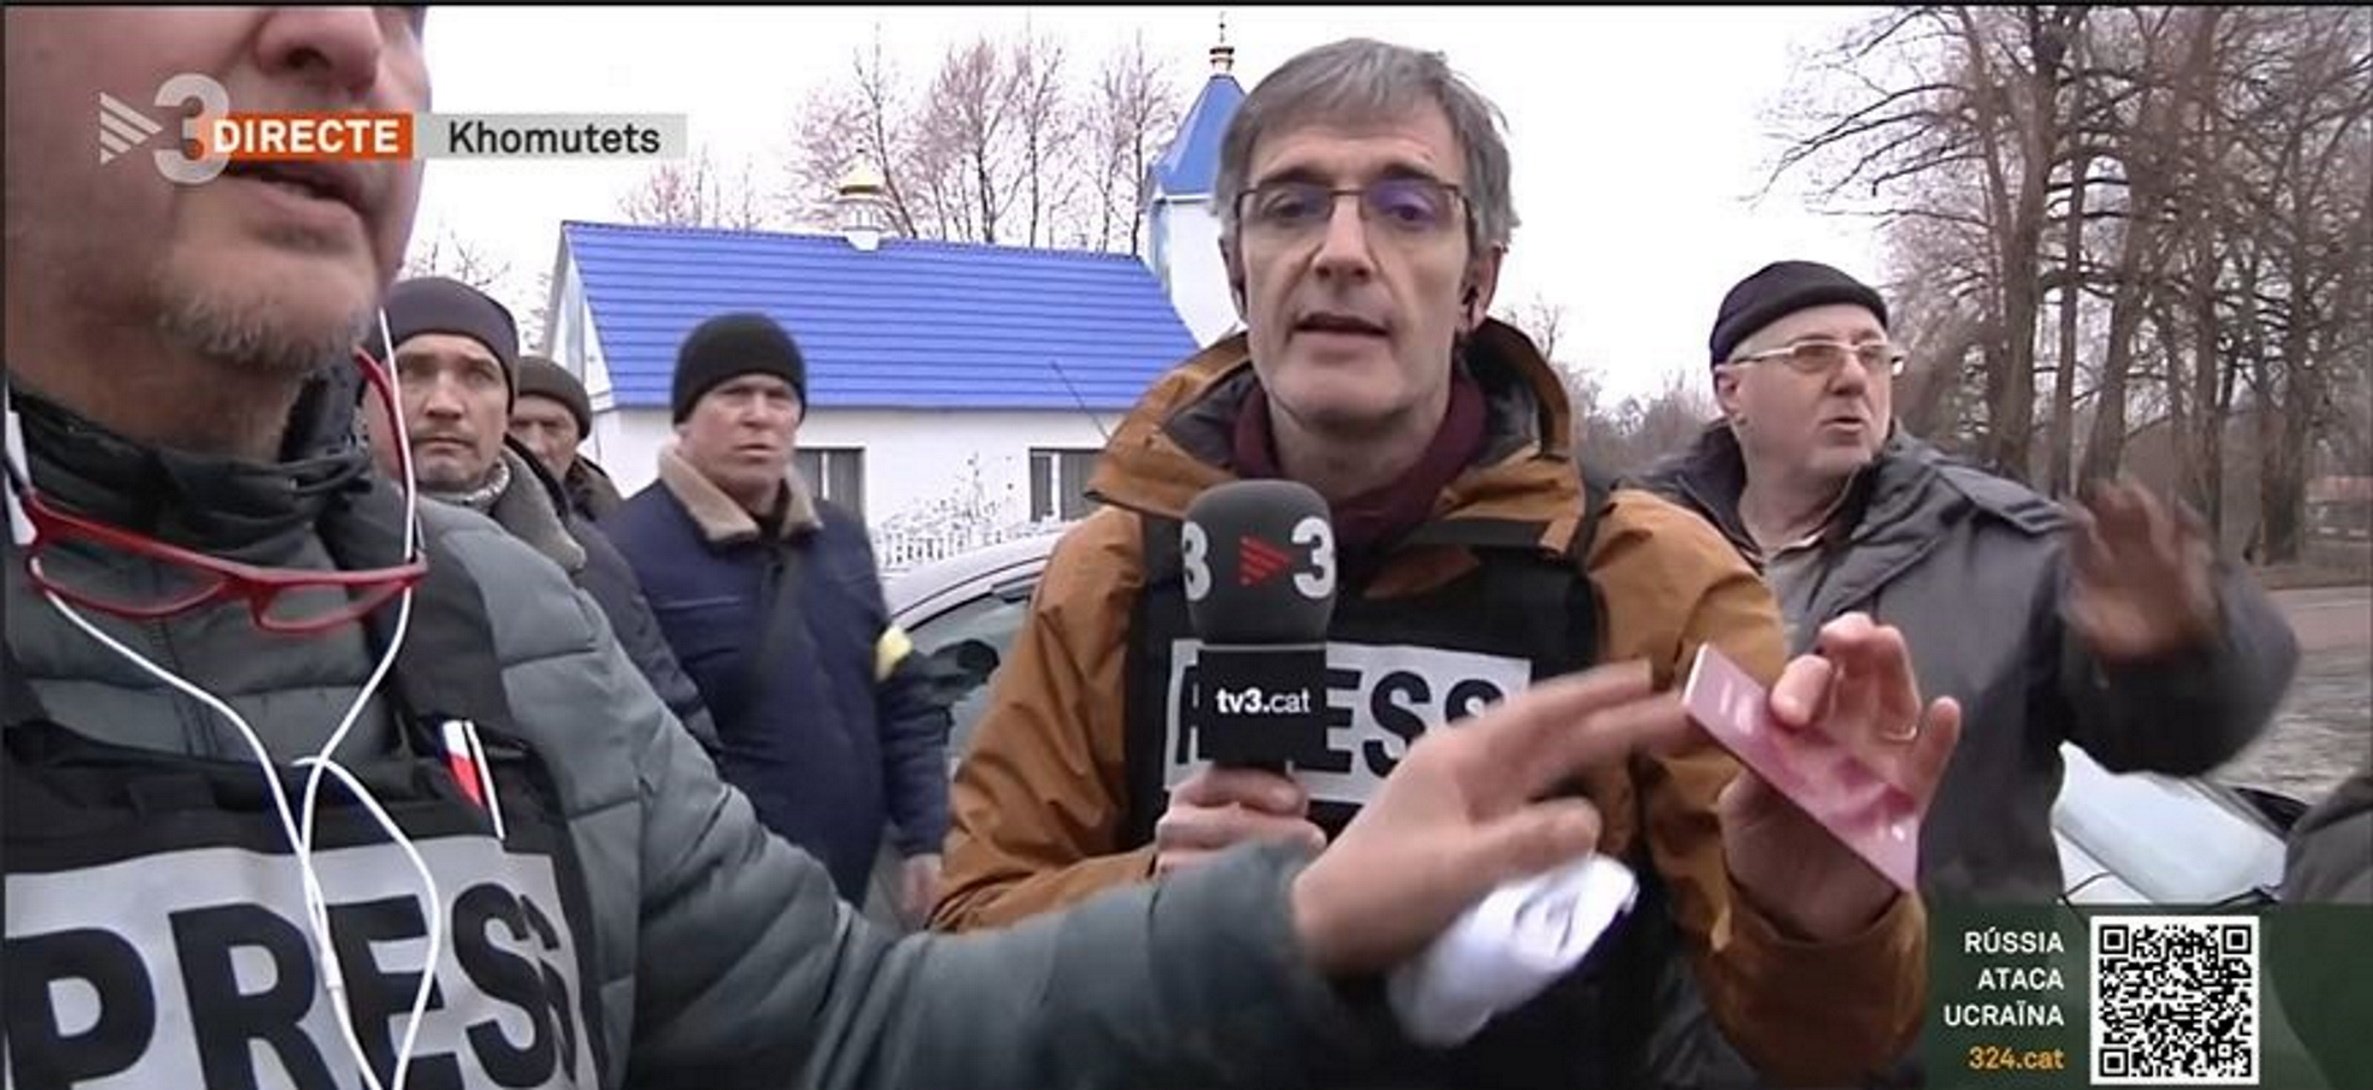 Ucraïna: Obliguen a tallar la connexió en directe a l'enviat de TV3 Lluís Caelles